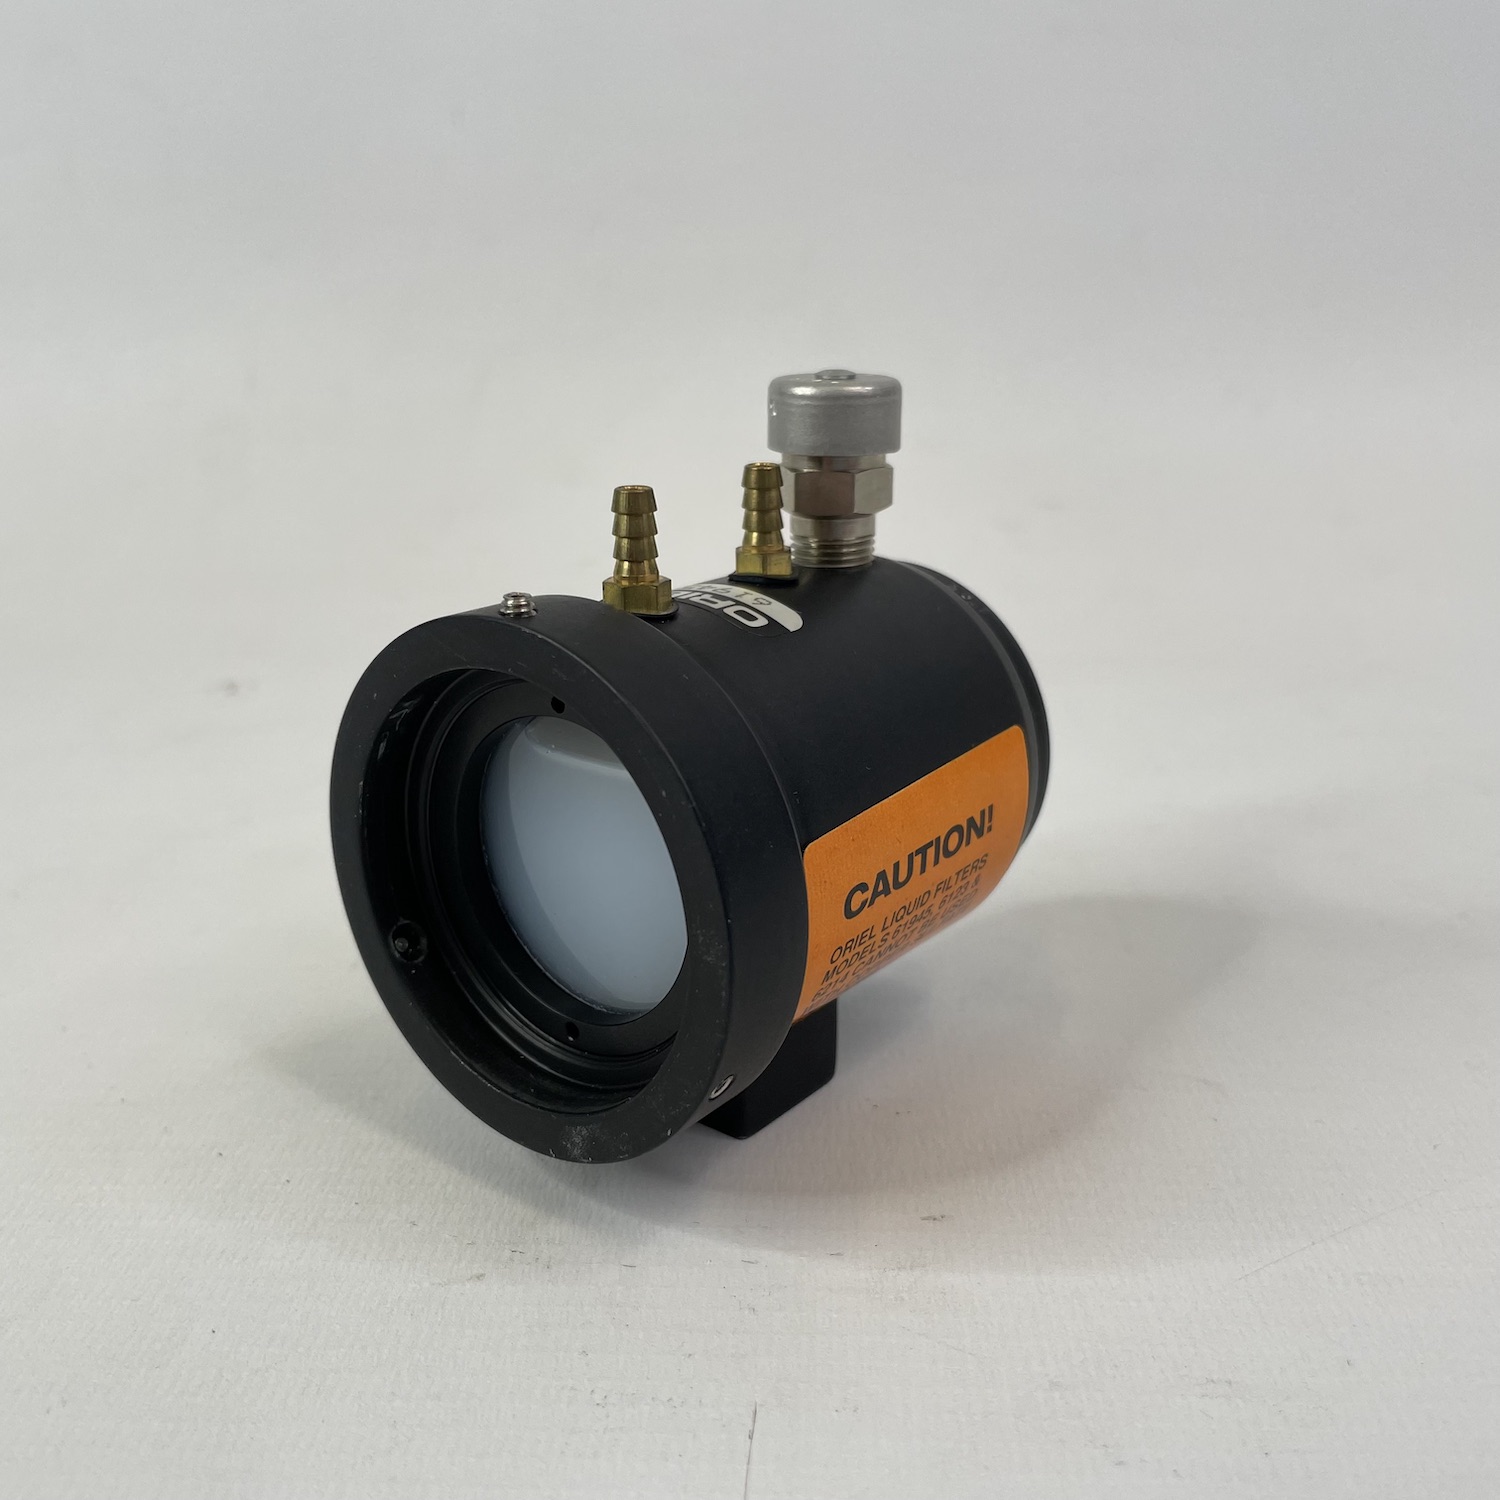 liquid optical filter | newport | oriel | 61945